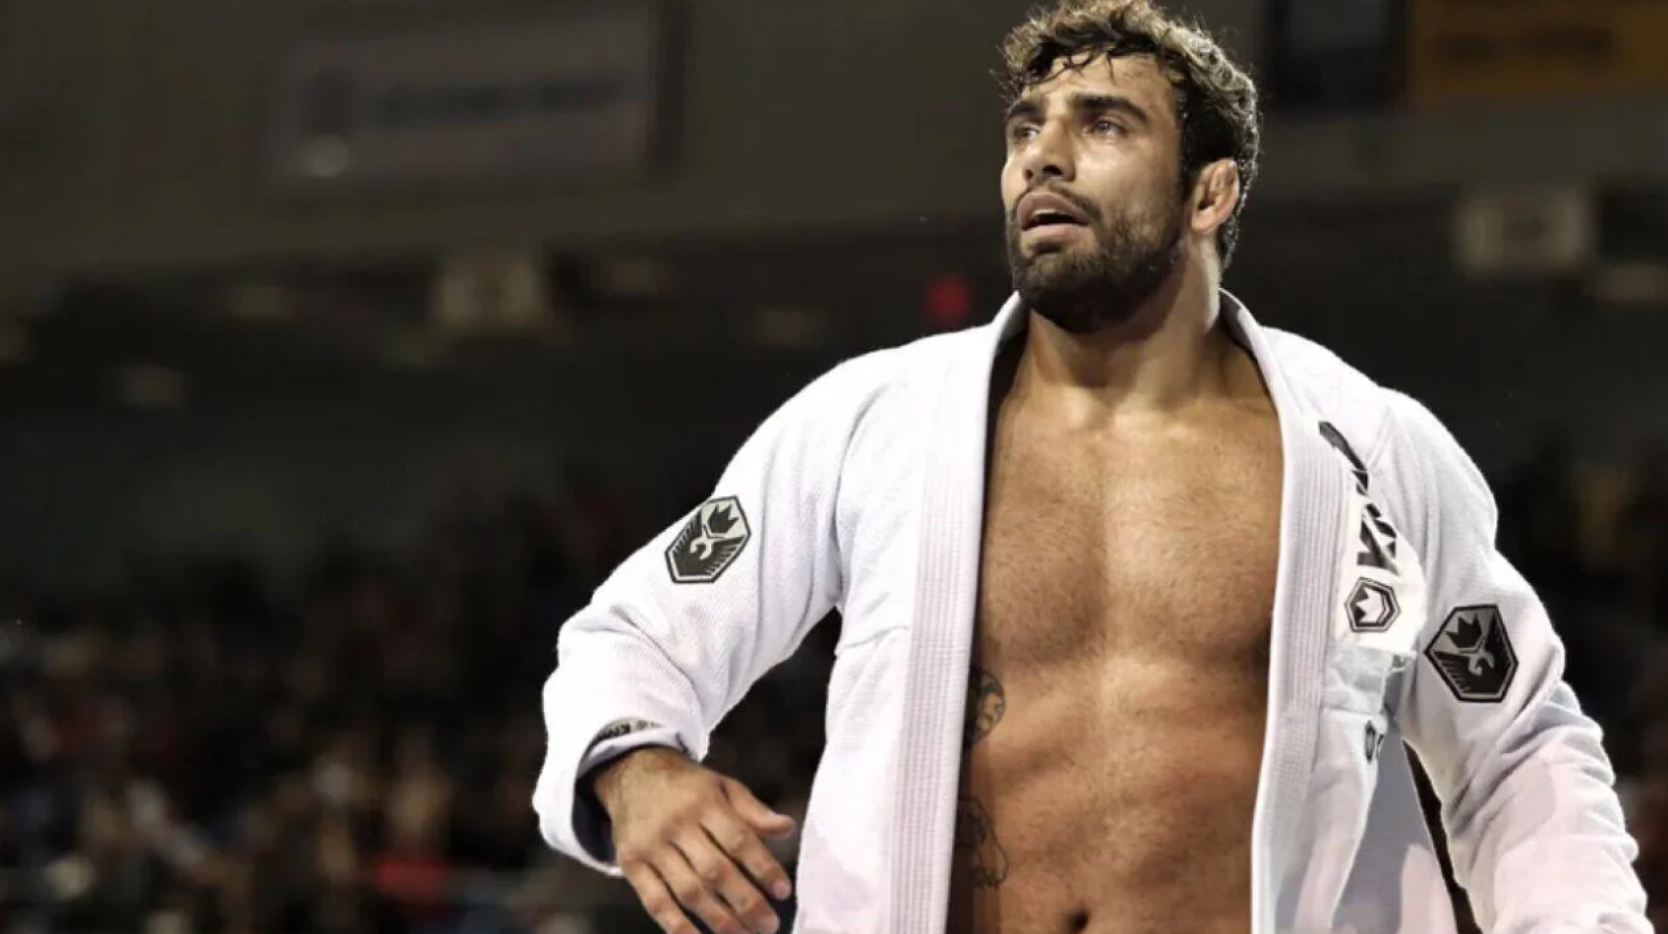 Der mehrfache brasilianische Jiu-Jitsu-Weltmeister Leondro Lo wurde durch einen Kopfschuss getötet.